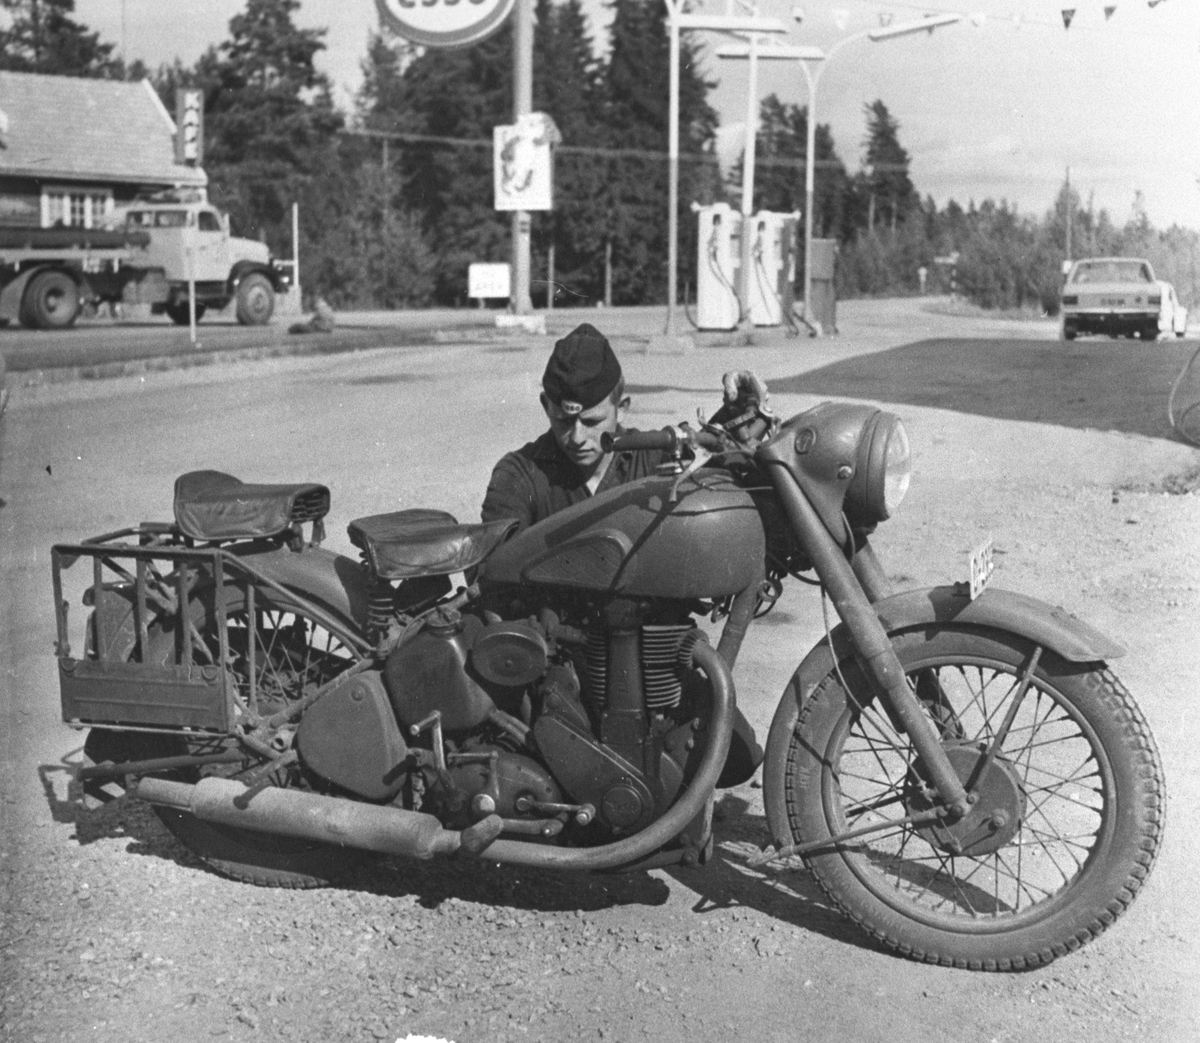 Mann med motorsykkel på bensinstasjon, Herbergåsen, Nes på Romerike.